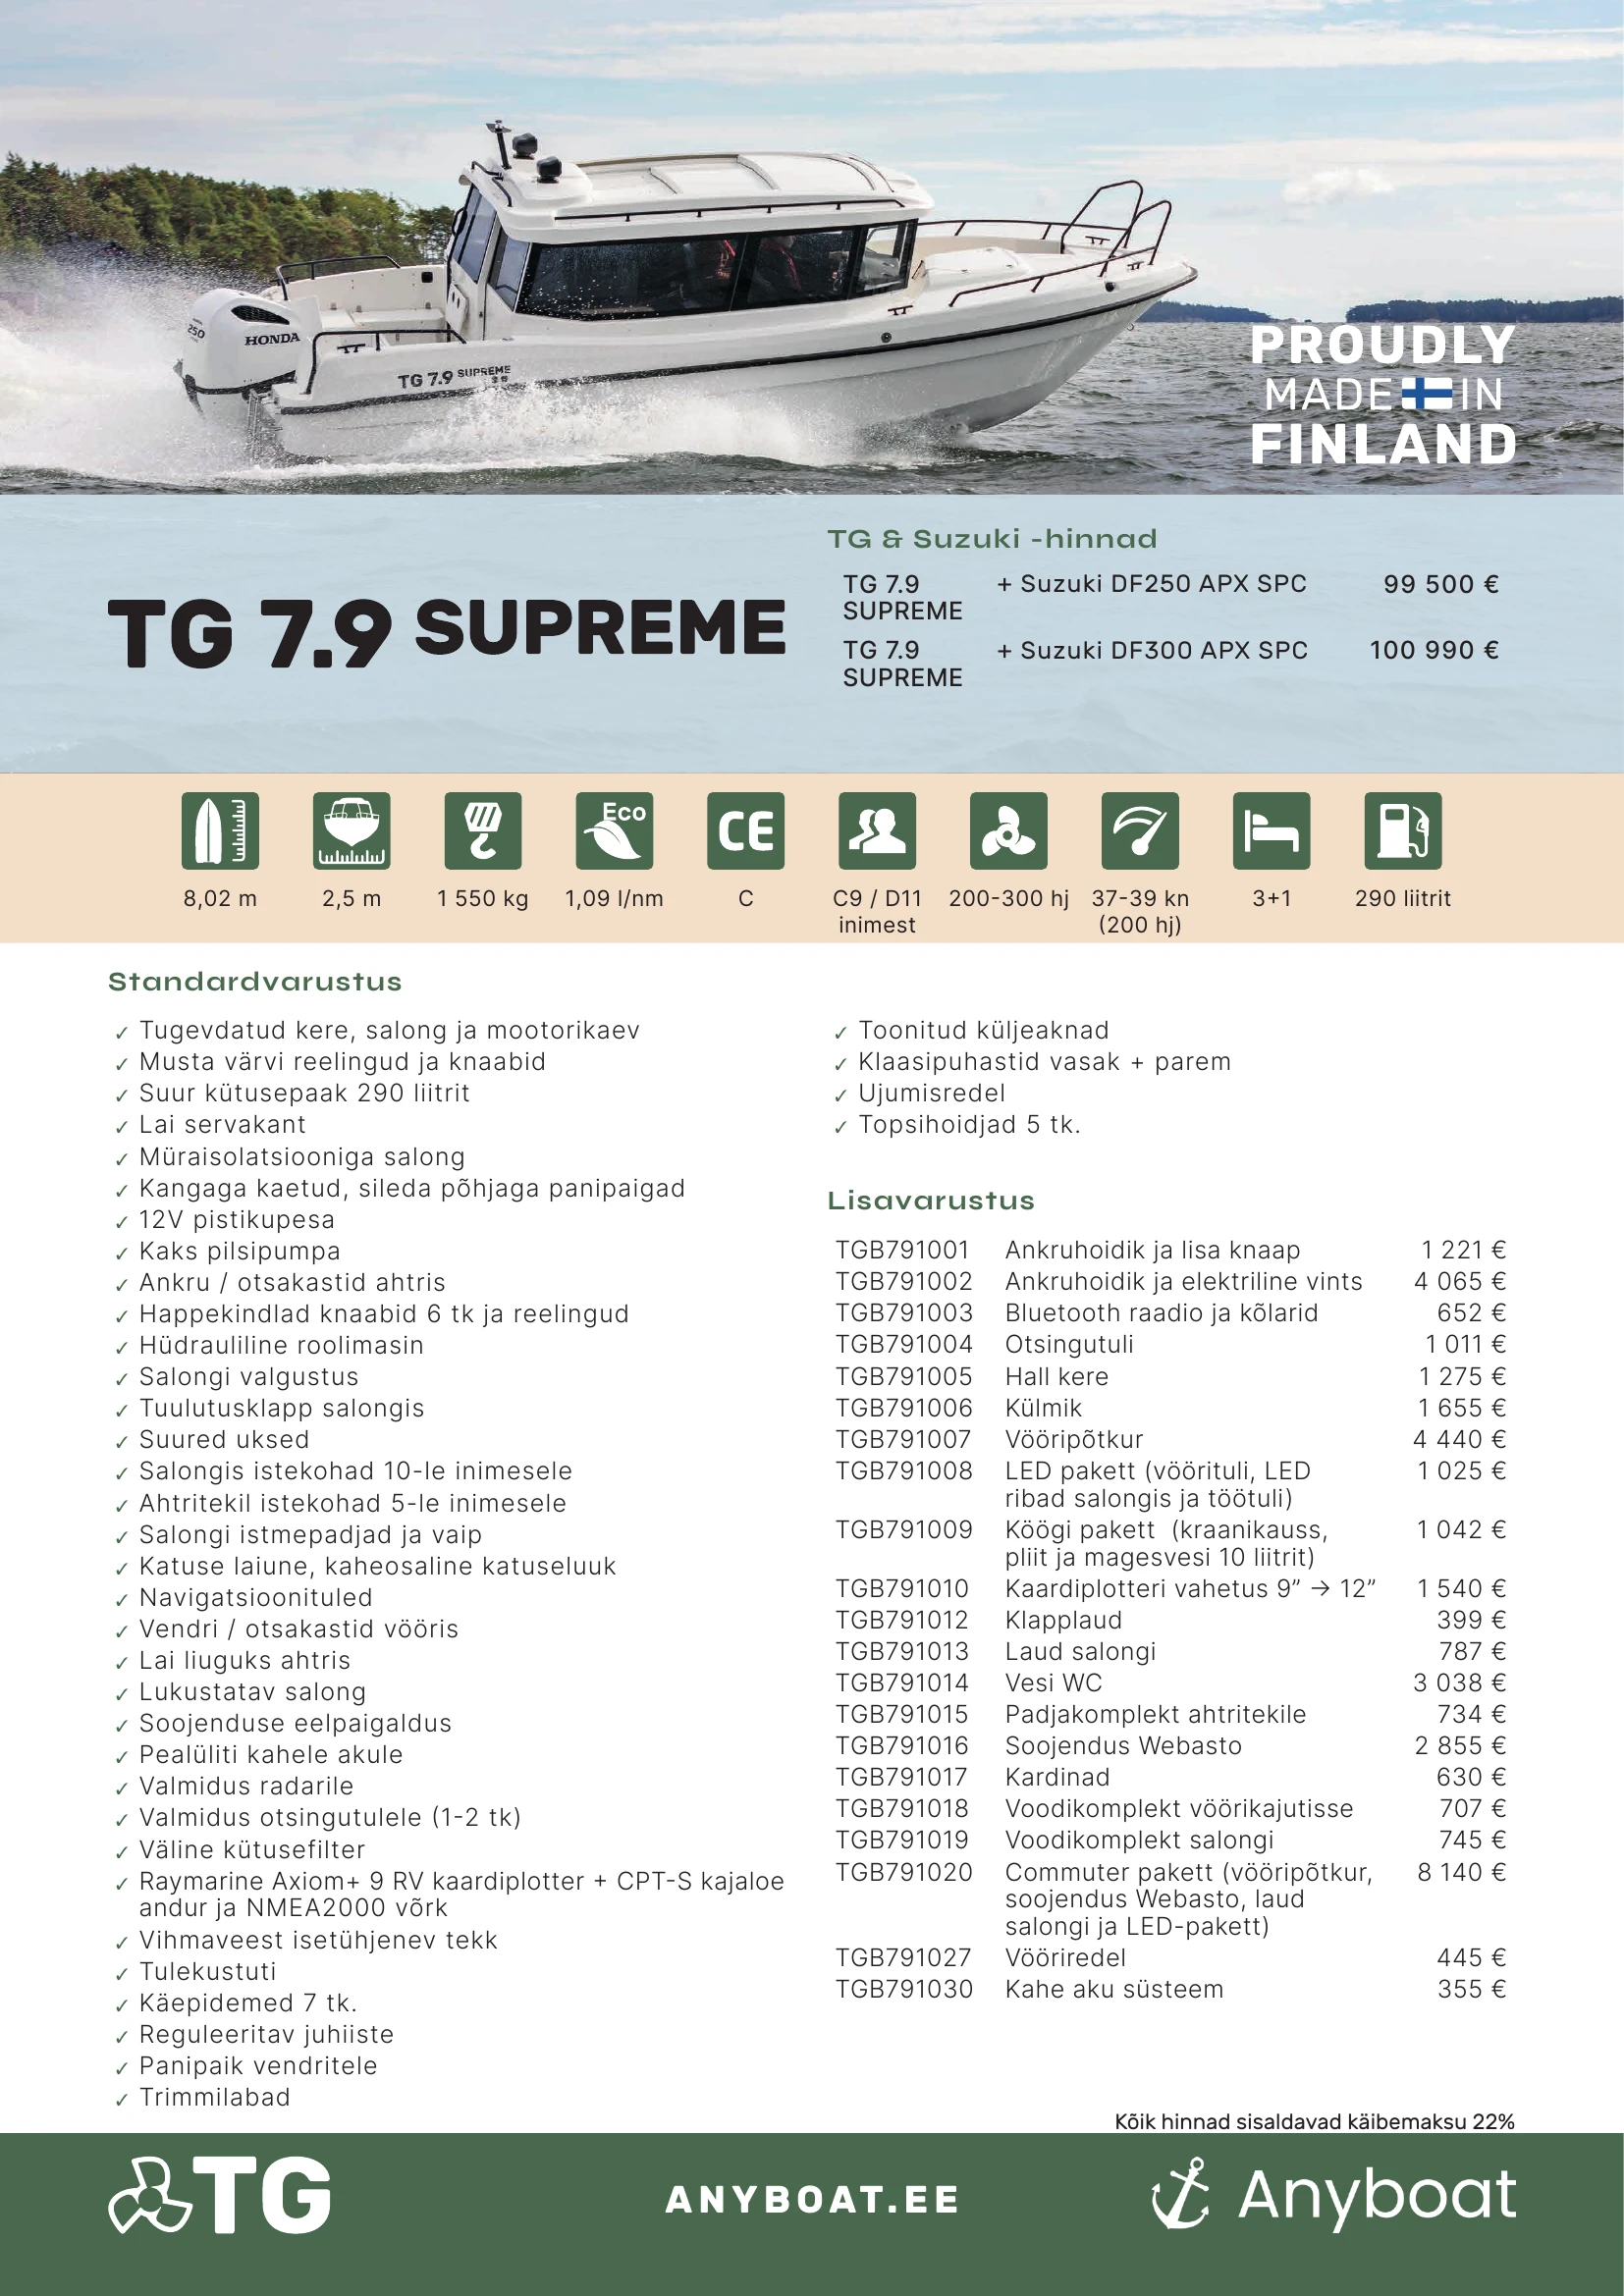 TG 7.9 Supreme